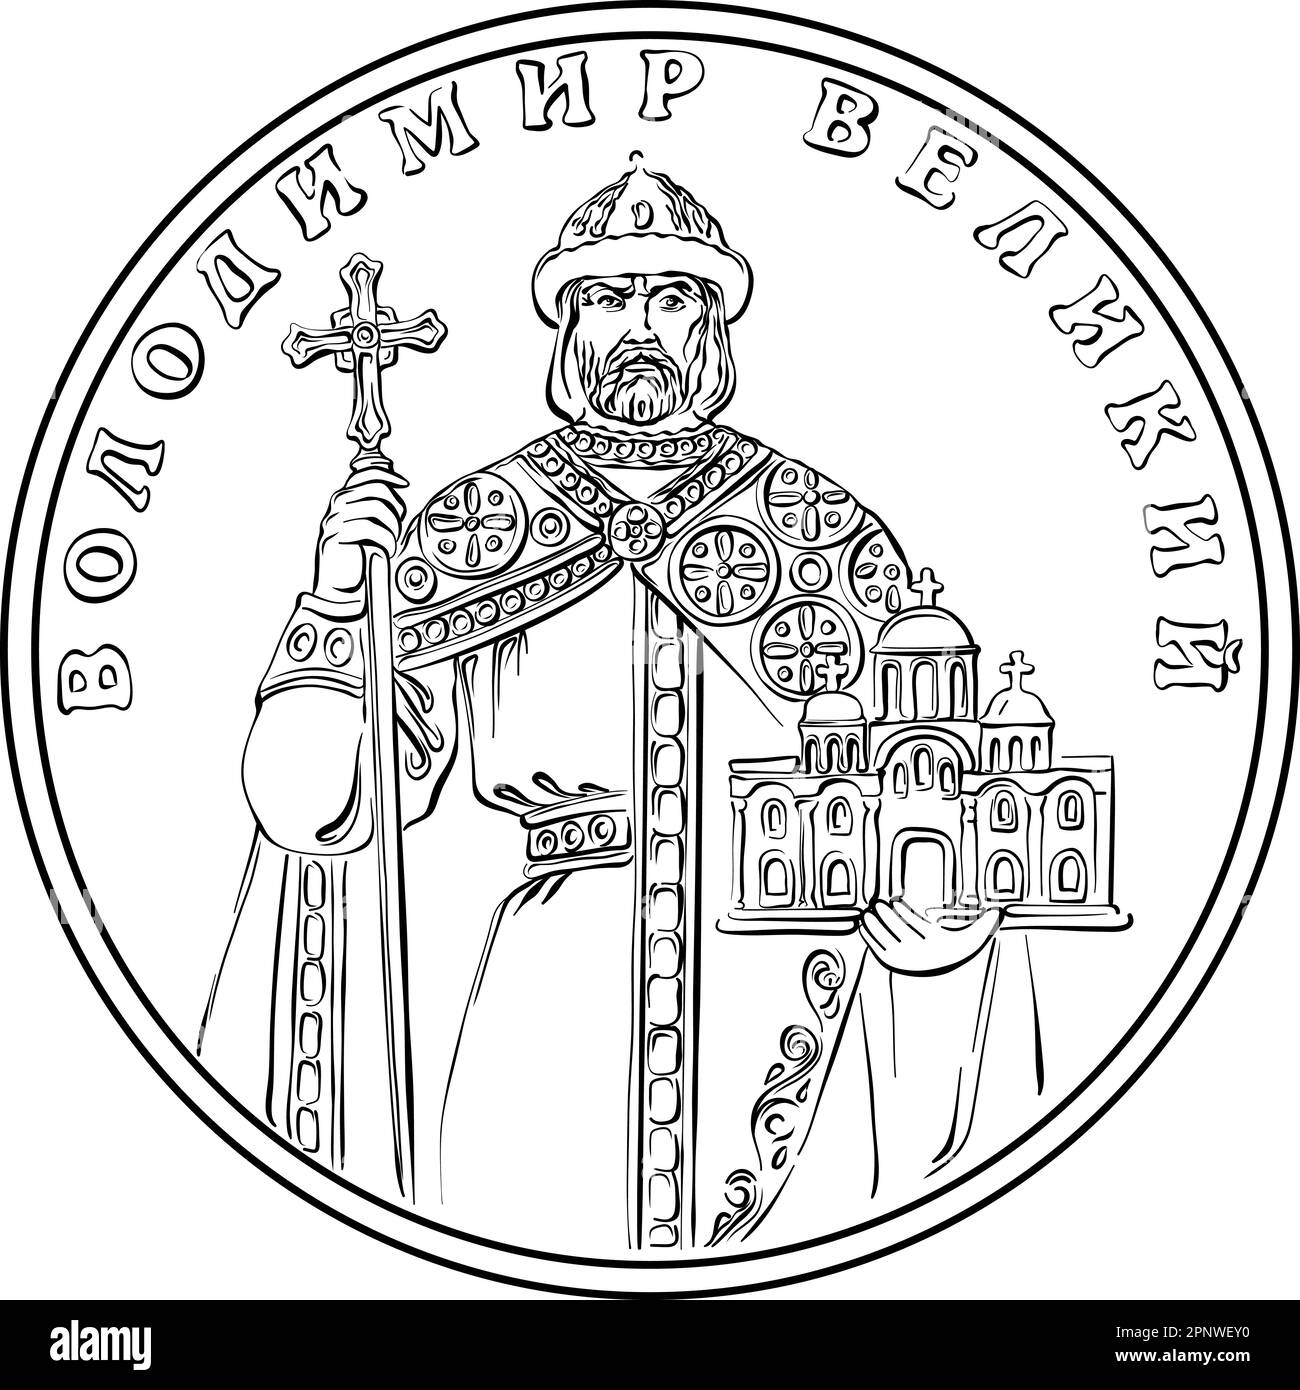 Monnaie ukrainienne pièce d'or une hryvnia, l'inverse avec Vladimir le Grand. Image en noir et blanc Illustration de Vecteur